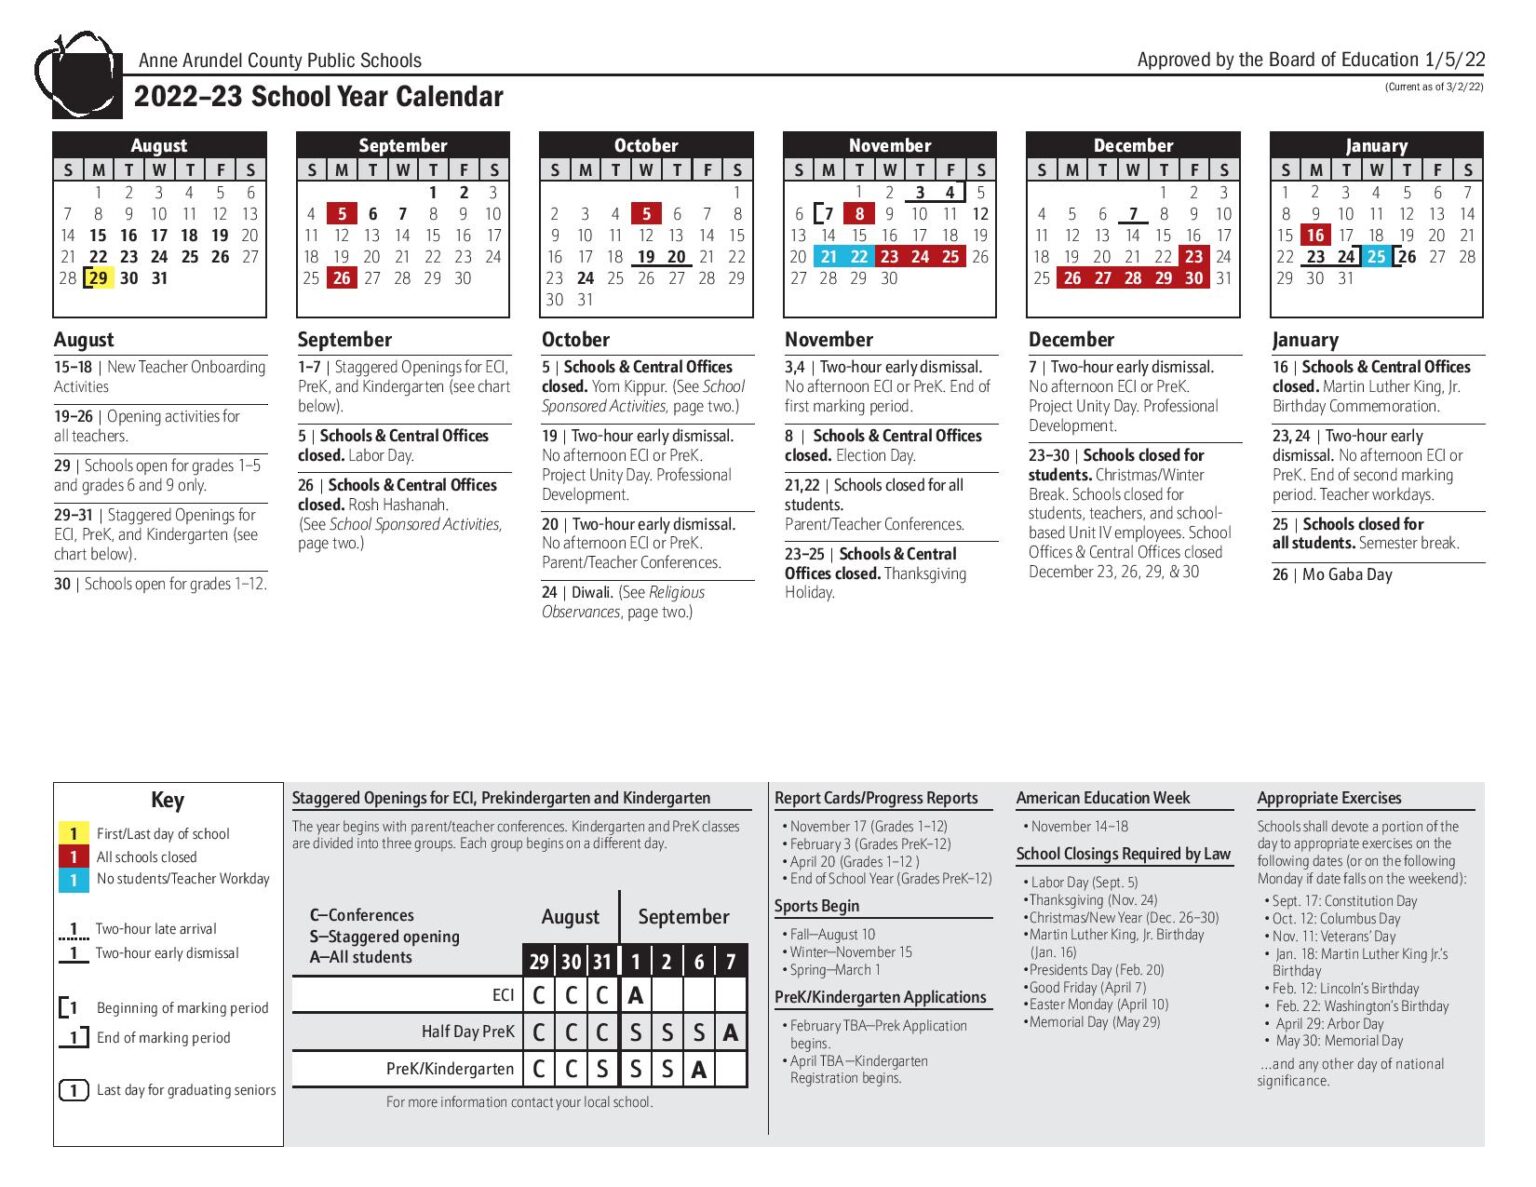 anne-arundel-county-public-schools-calendar-2022-2023-pdf